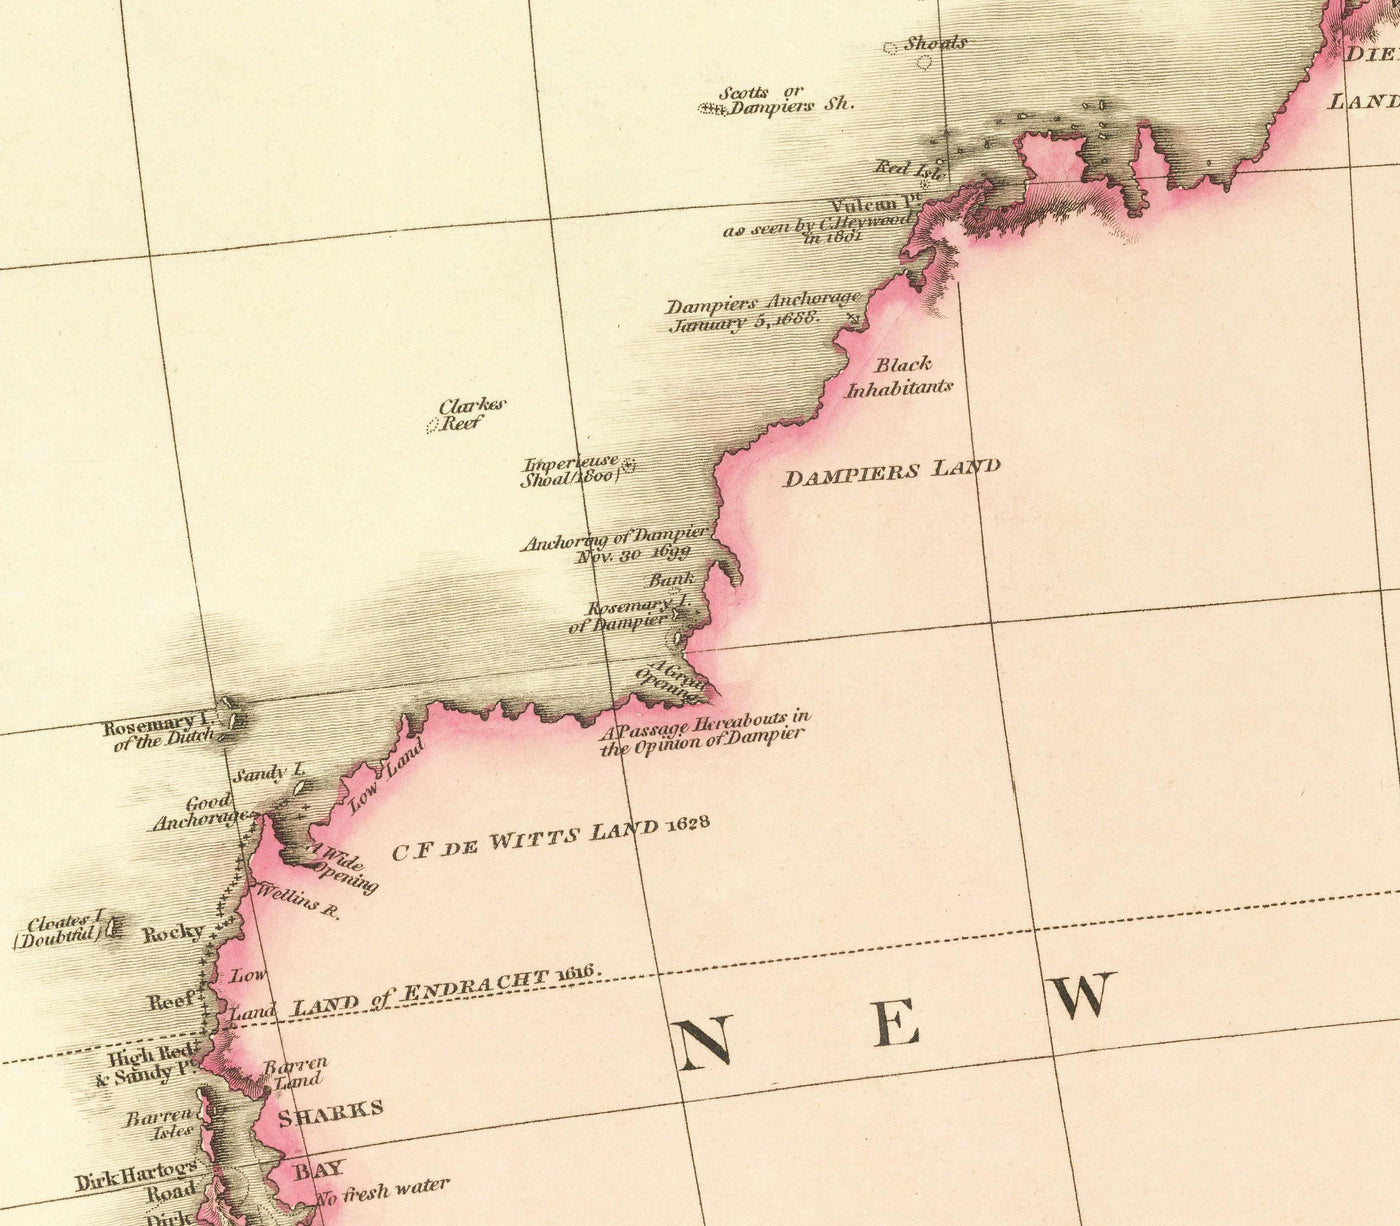 Ancienne carte d'Australie par John Pinkerton, 1813 - Australasie, Océanie, Mélanésie - Colonie pénitentiaire de Nouvelle-Galles du Sud